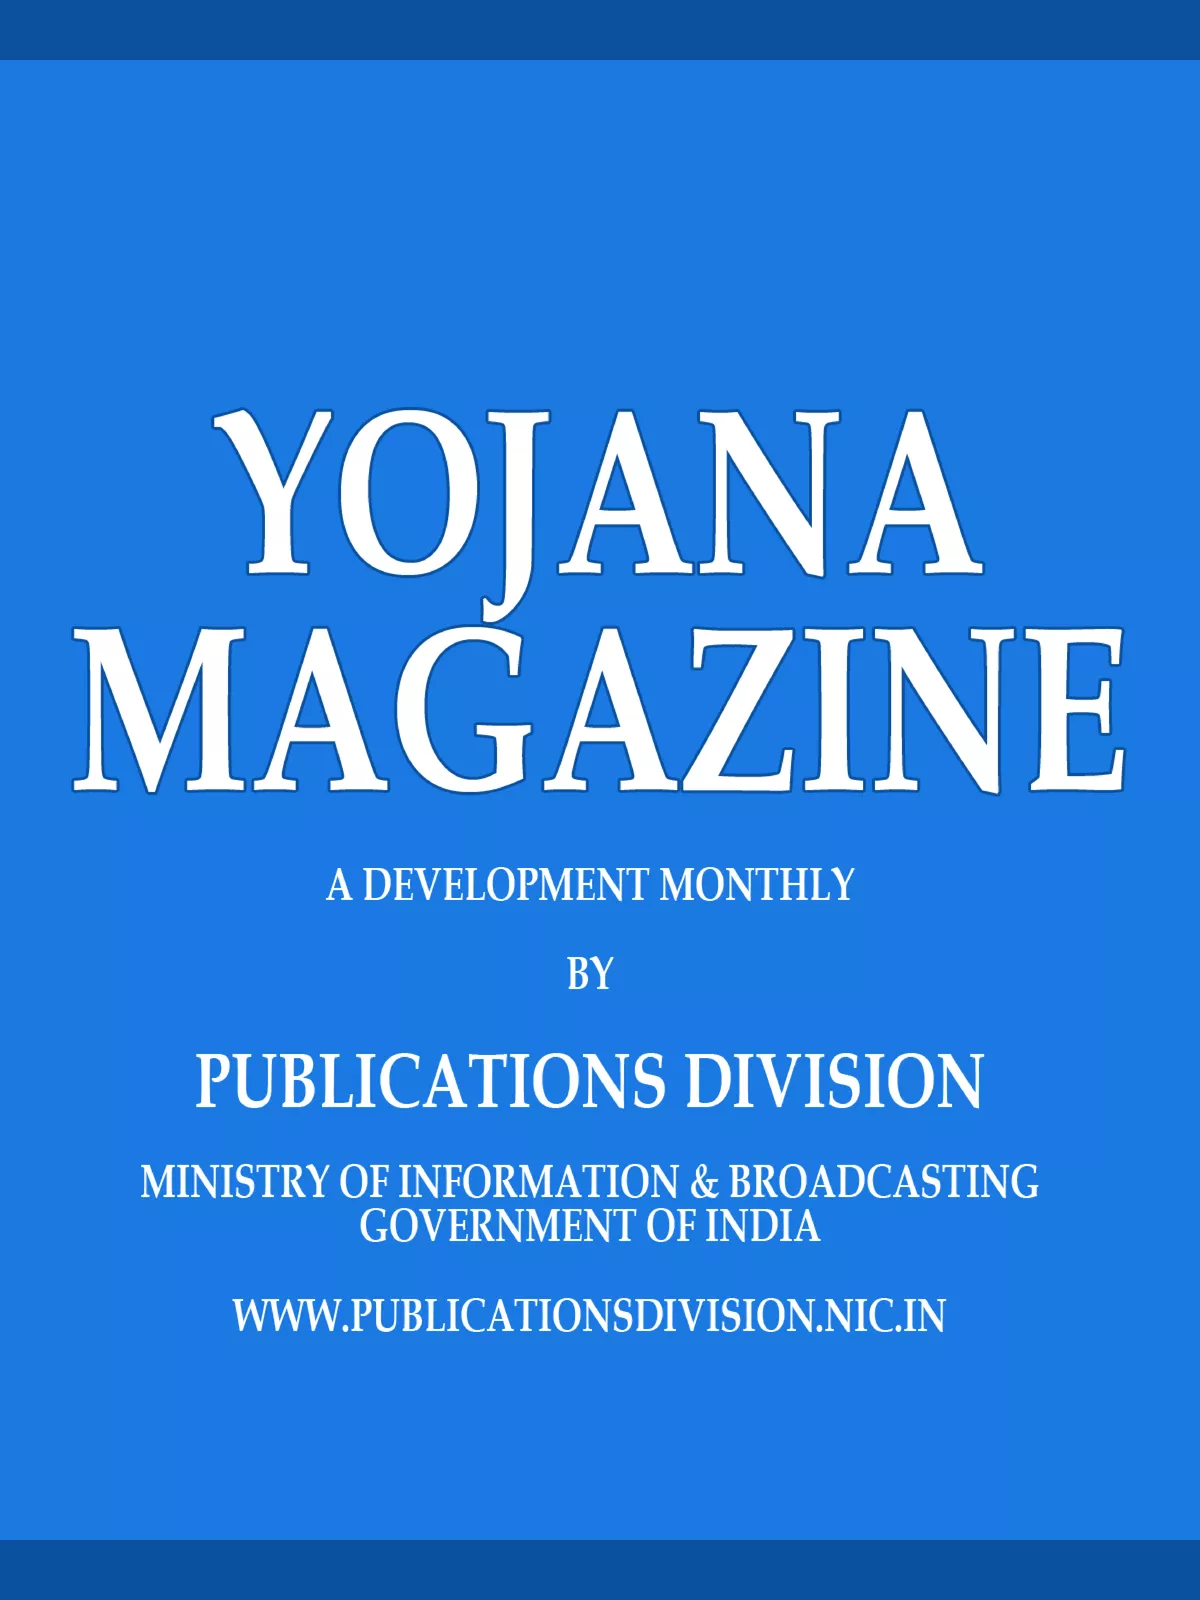 Yojana Magazine September 2021